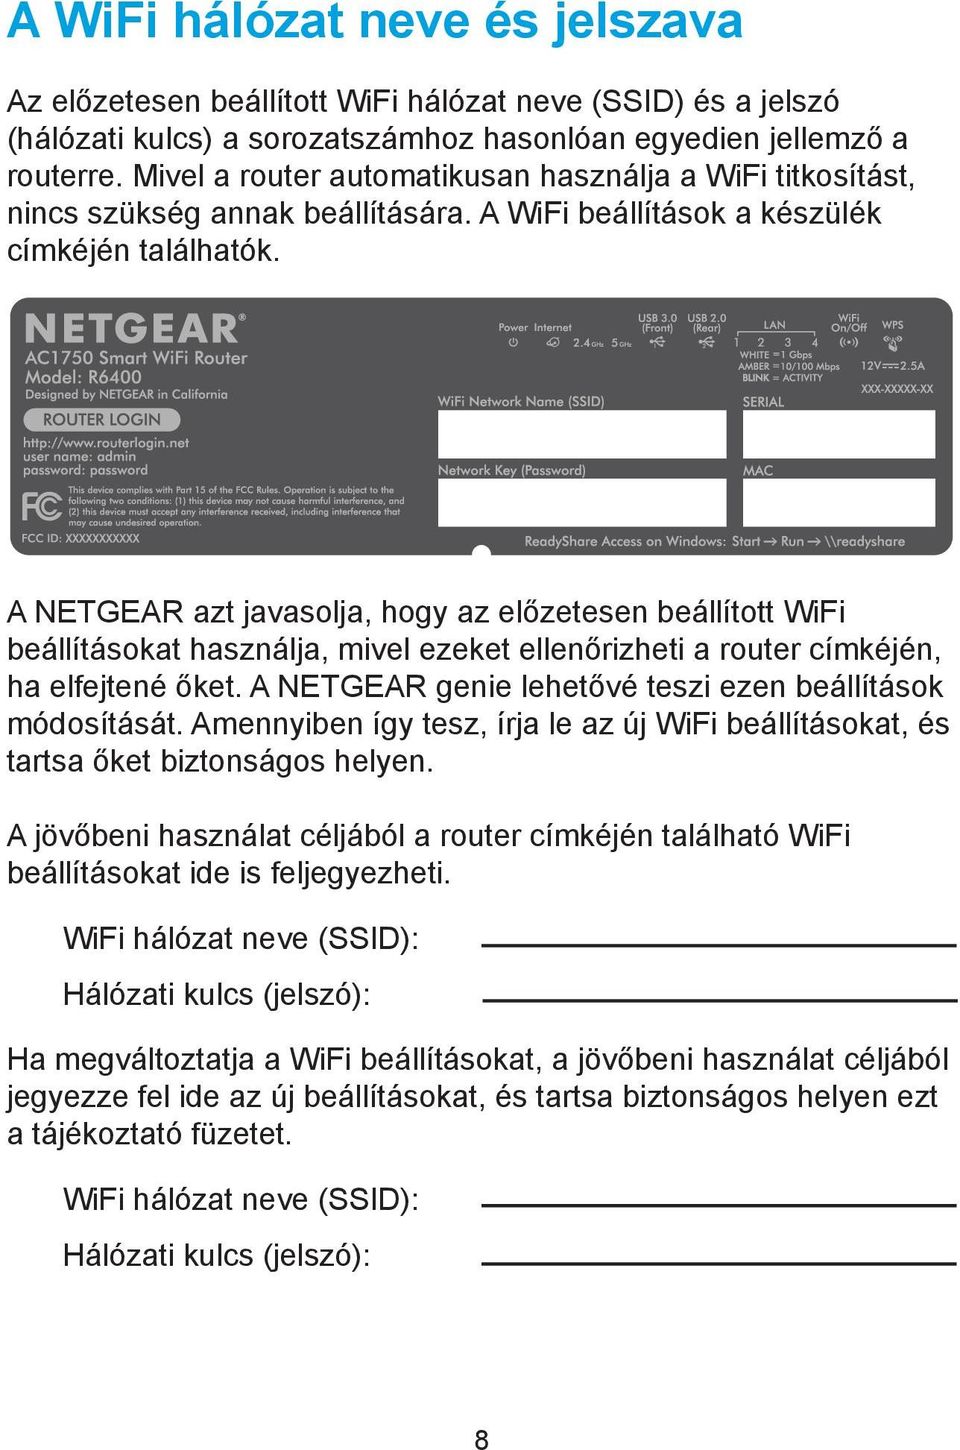 A NETGEAR azt javasolja, hogy az előzetesen beállított WiFi beállításokat használja, mivel ezeket ellenőrizheti a router címkéjén, ha elfejtené őket.